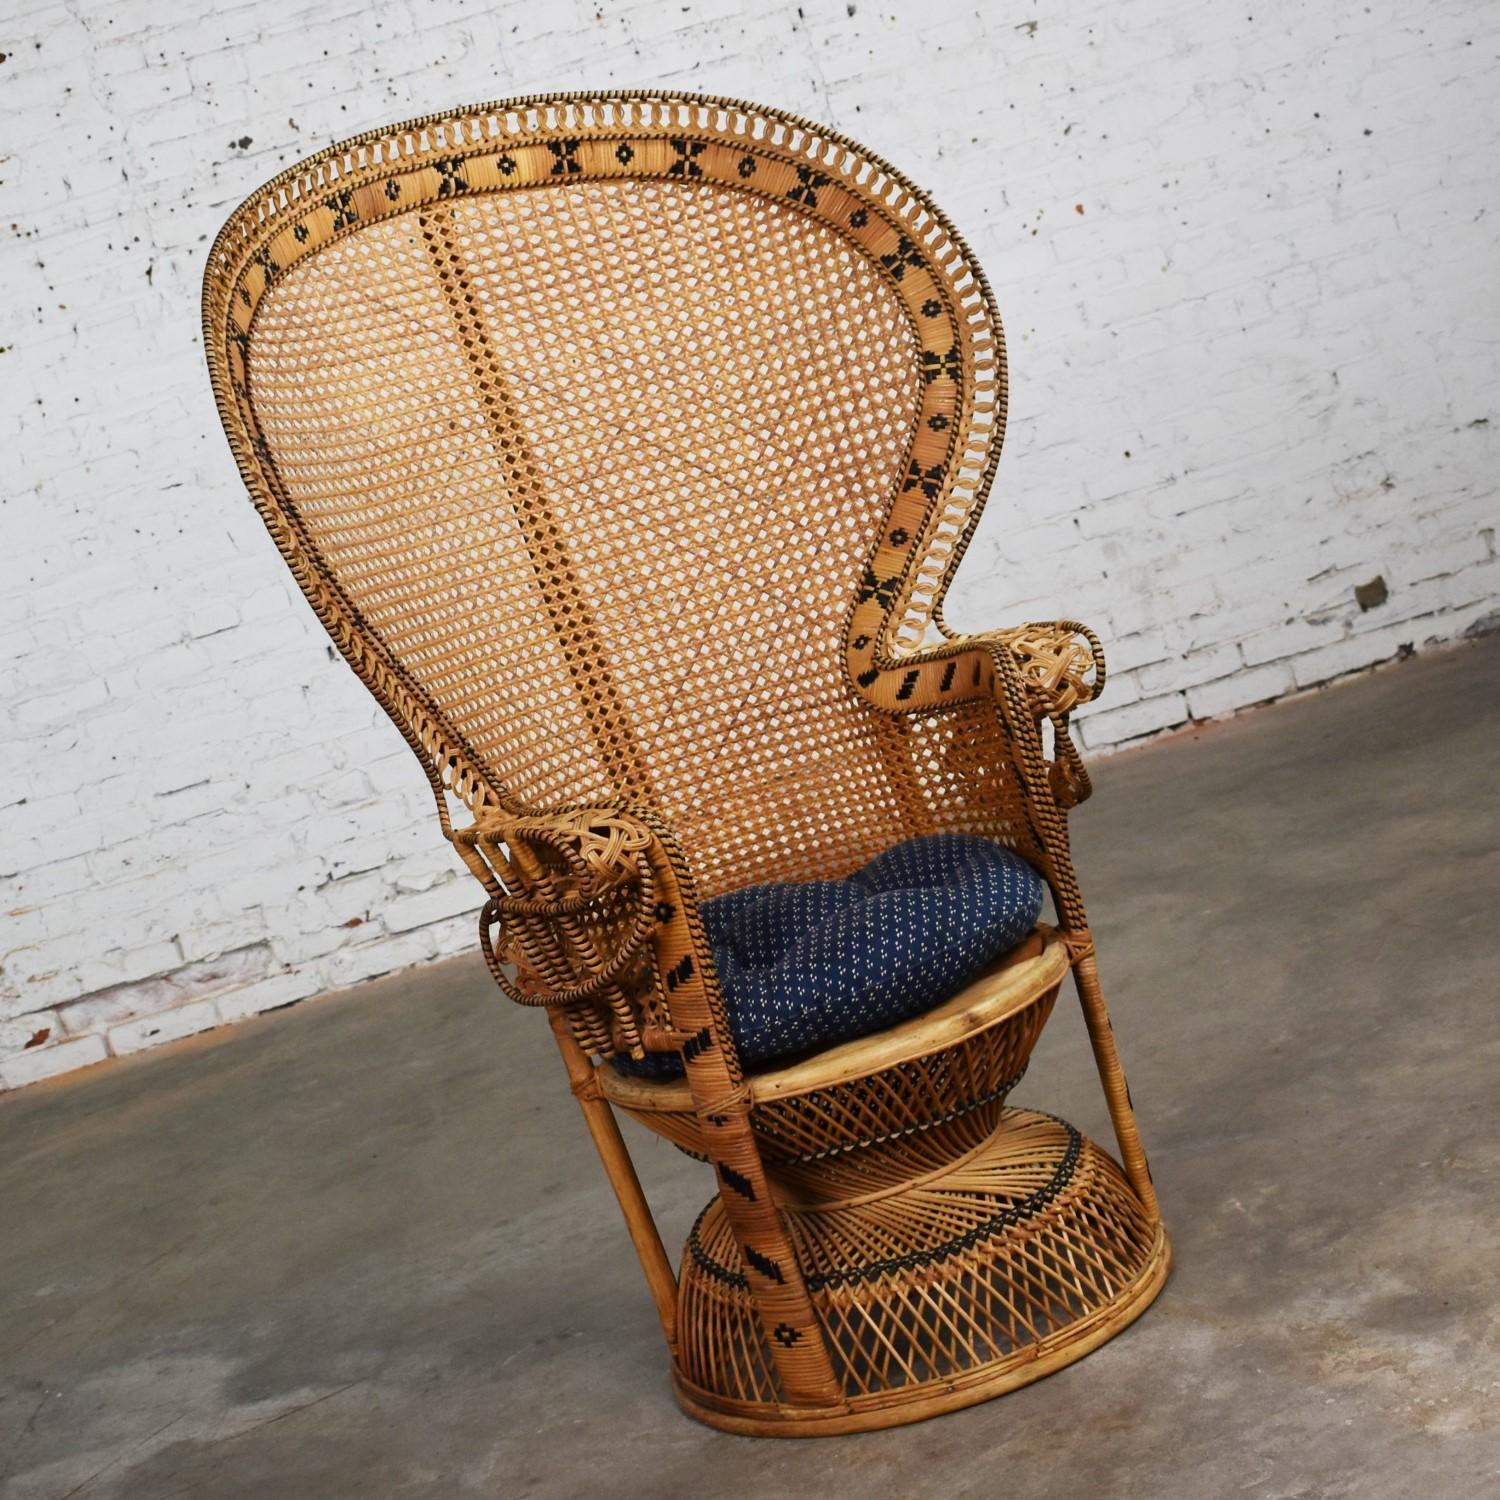 Awesome Vintage Bohemian oder Hollywood Regency Wicker Rattan Pfau Fan zurück Stuhl. Es ist in wunderbarem Vintage-Zustand mit keinen herausragenden Mängeln:: die wir entdeckt haben. Er hat auch ein marineblaues Sitzkissen mit Kleingedrucktem::